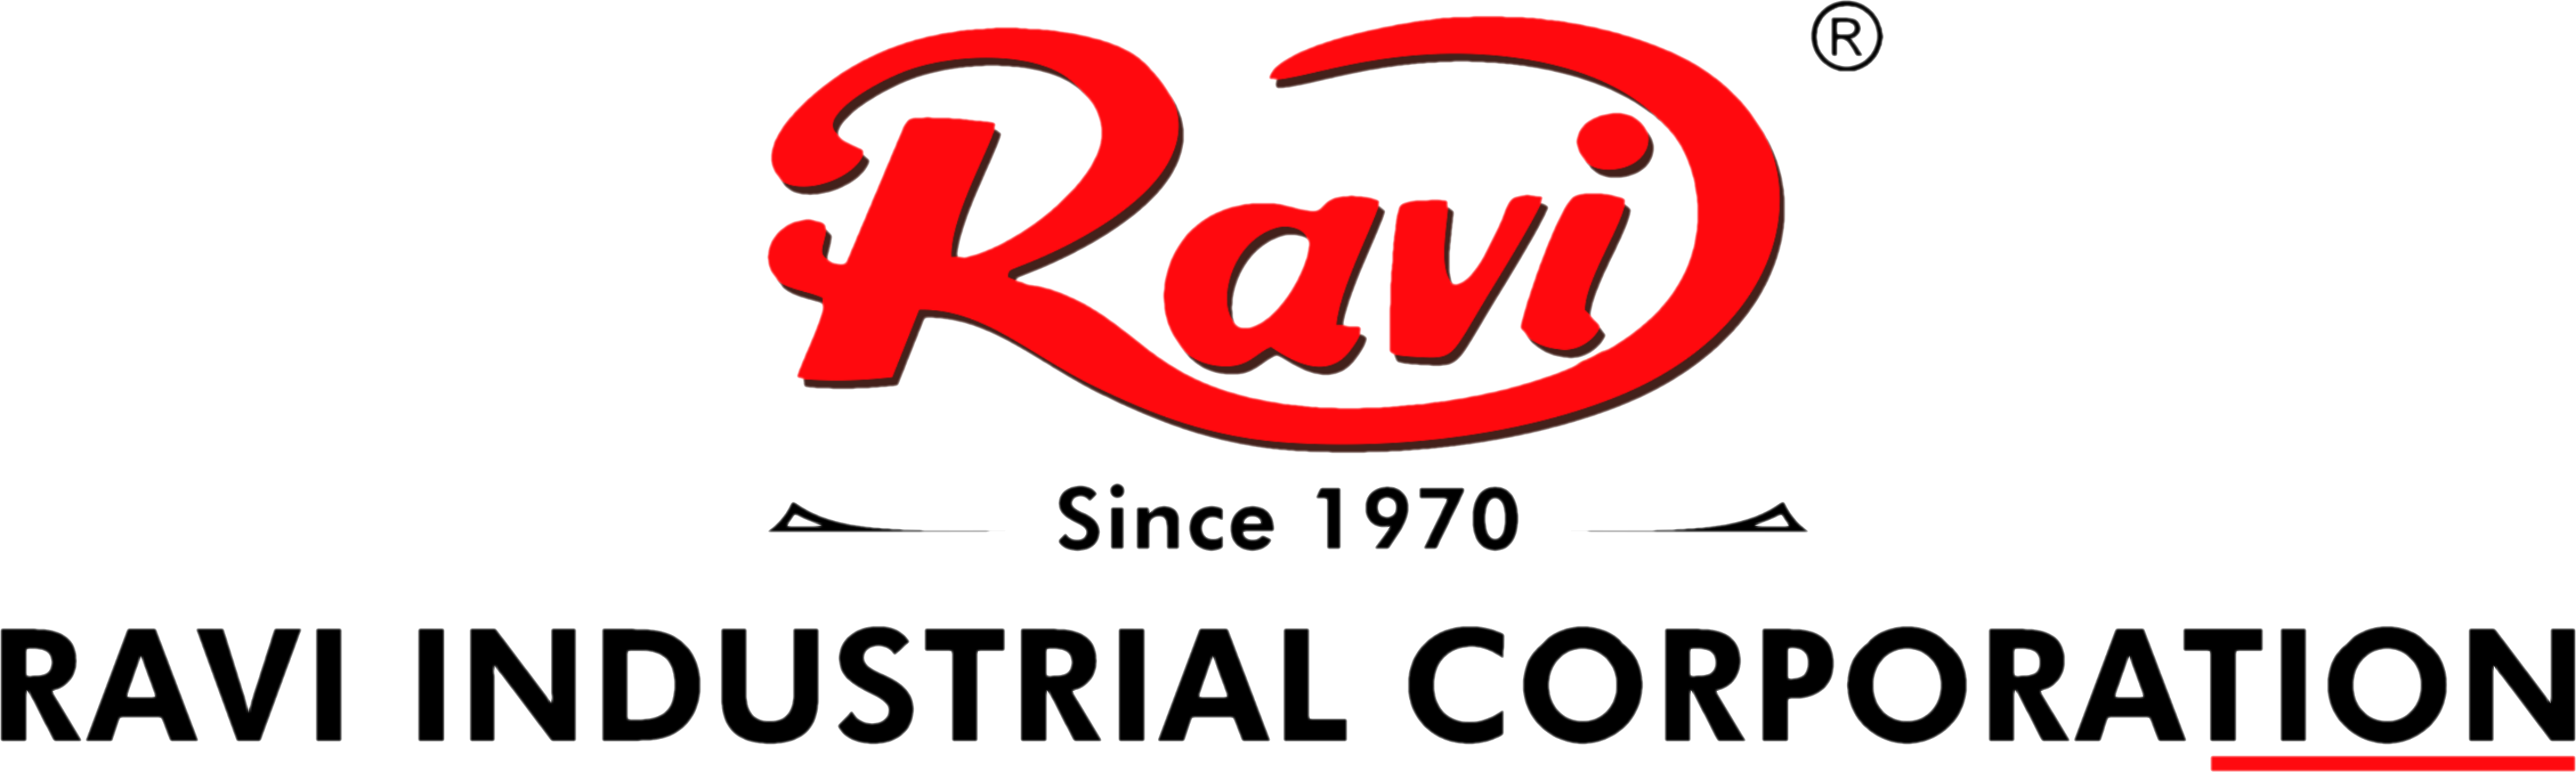 Ravi Presses